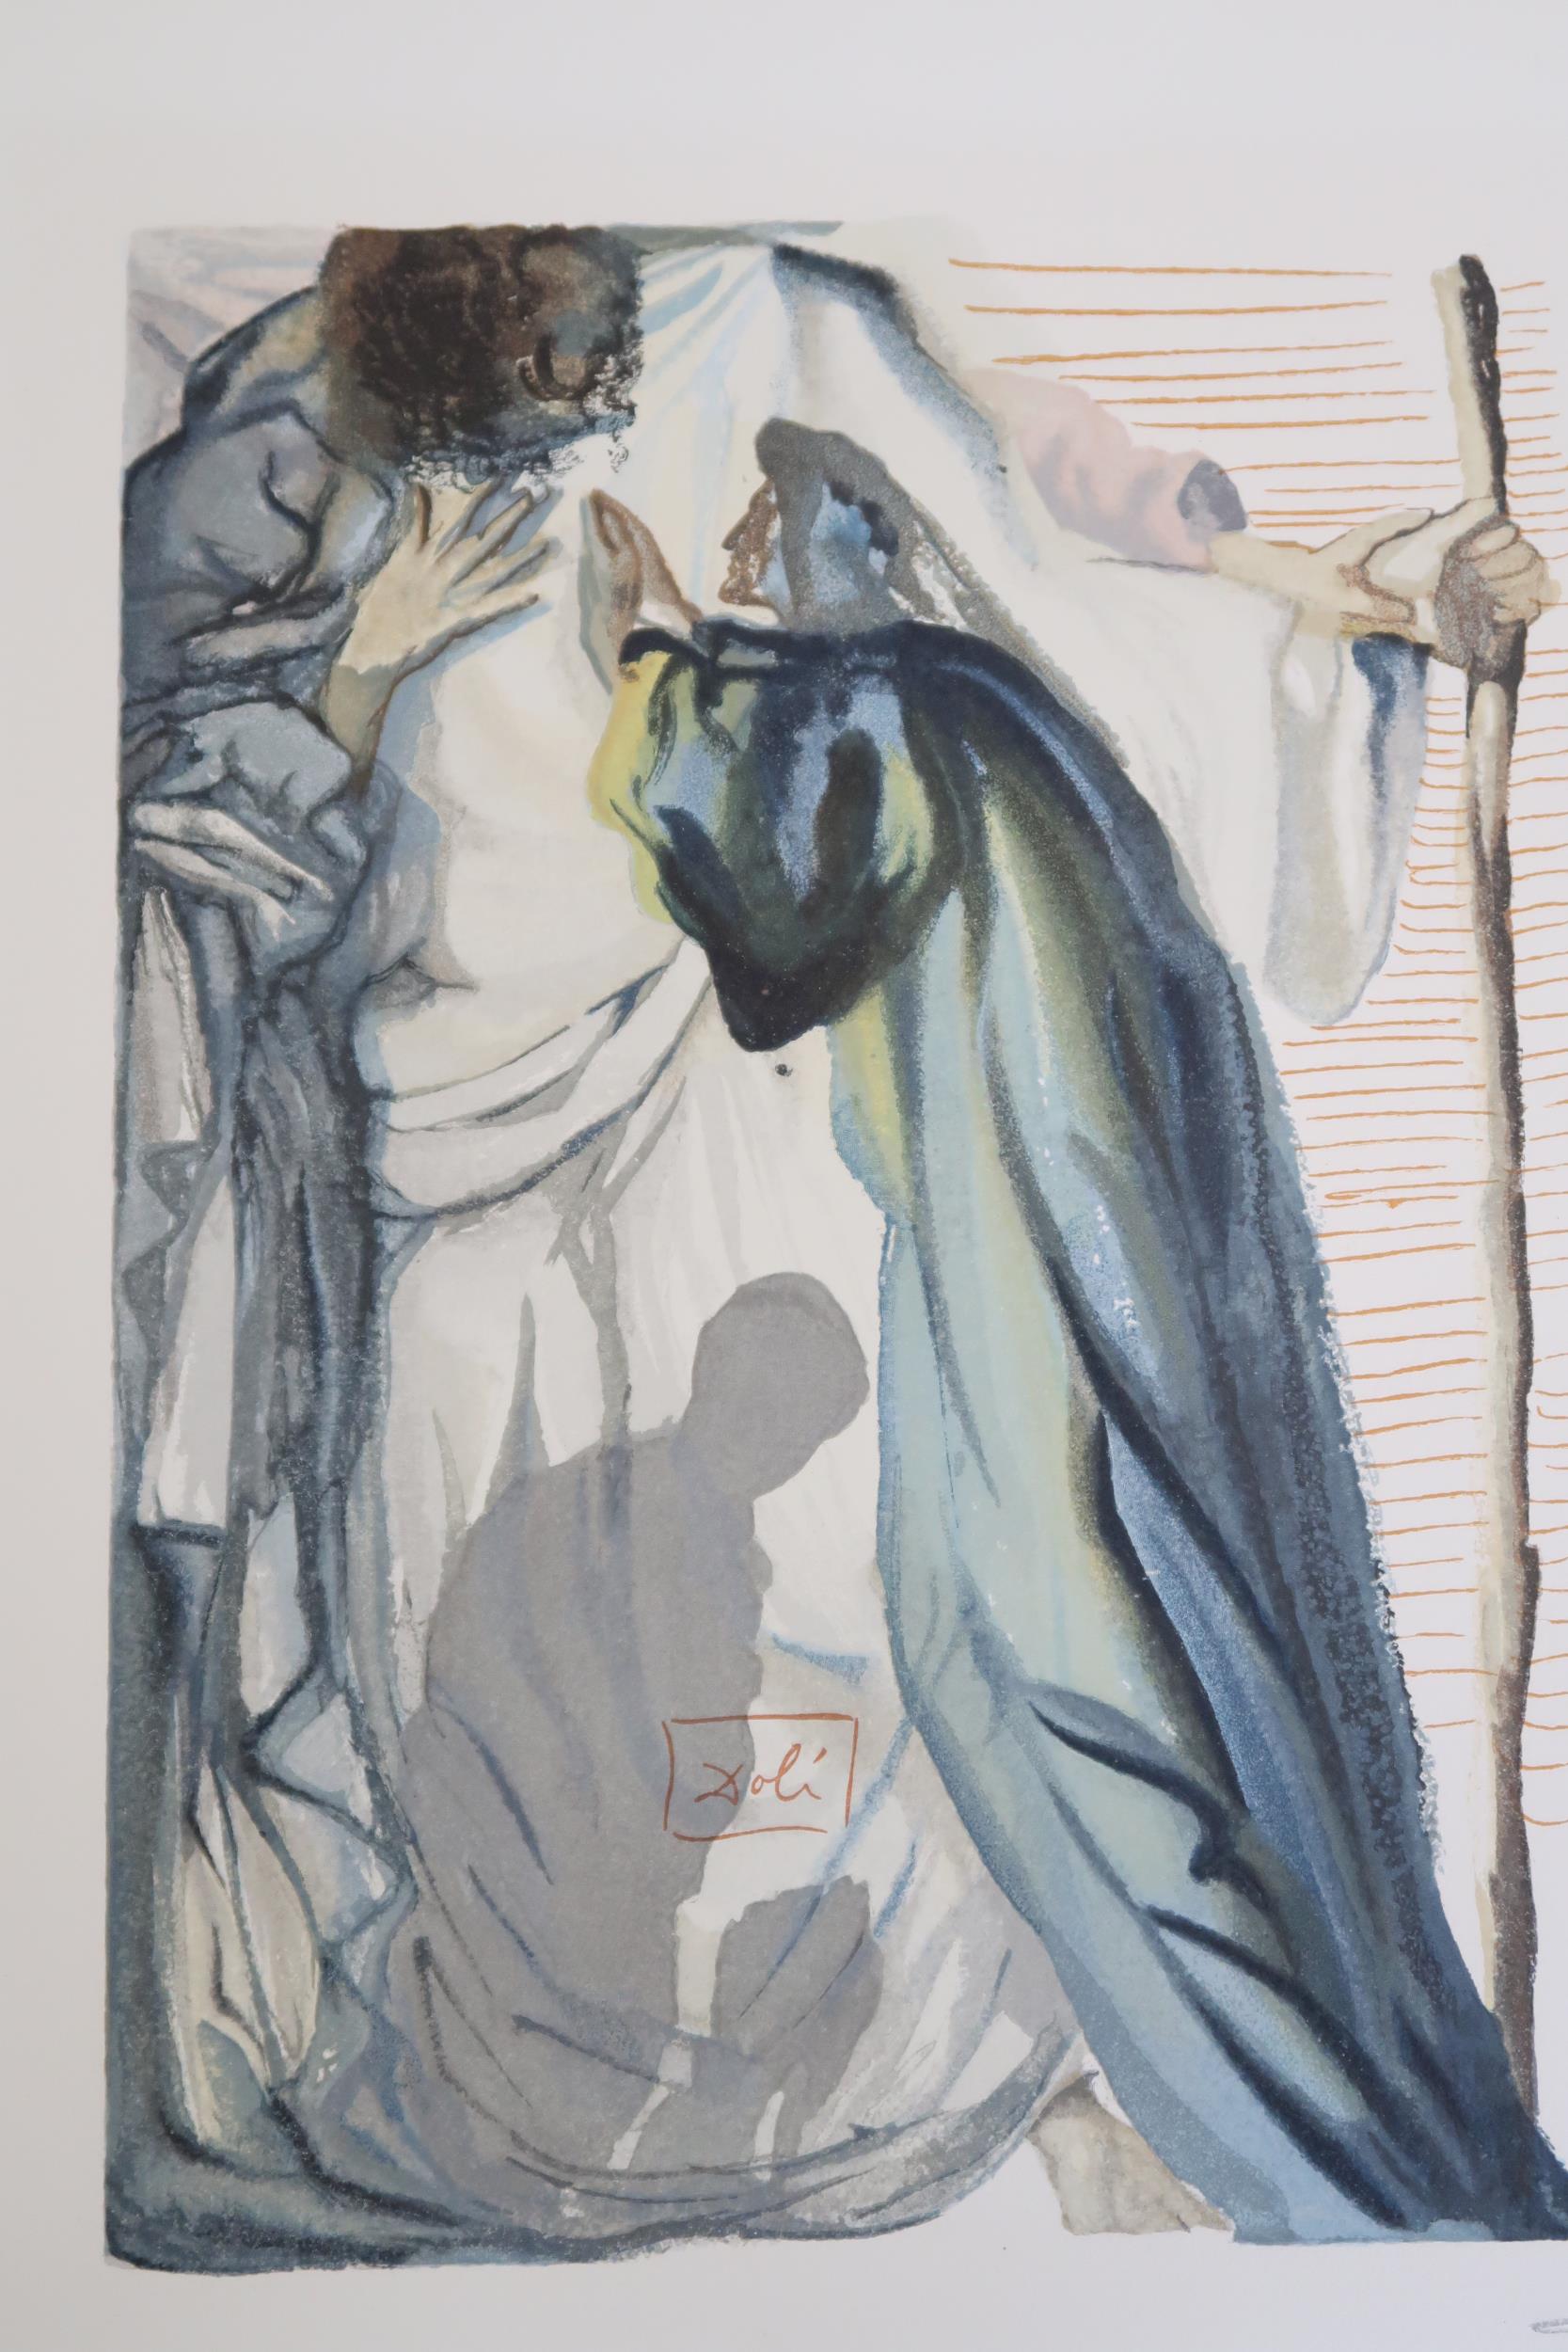 Salvador Dali - Print, unframed - The Blind for Envy Purgatory - 17cm x 25cm - signed